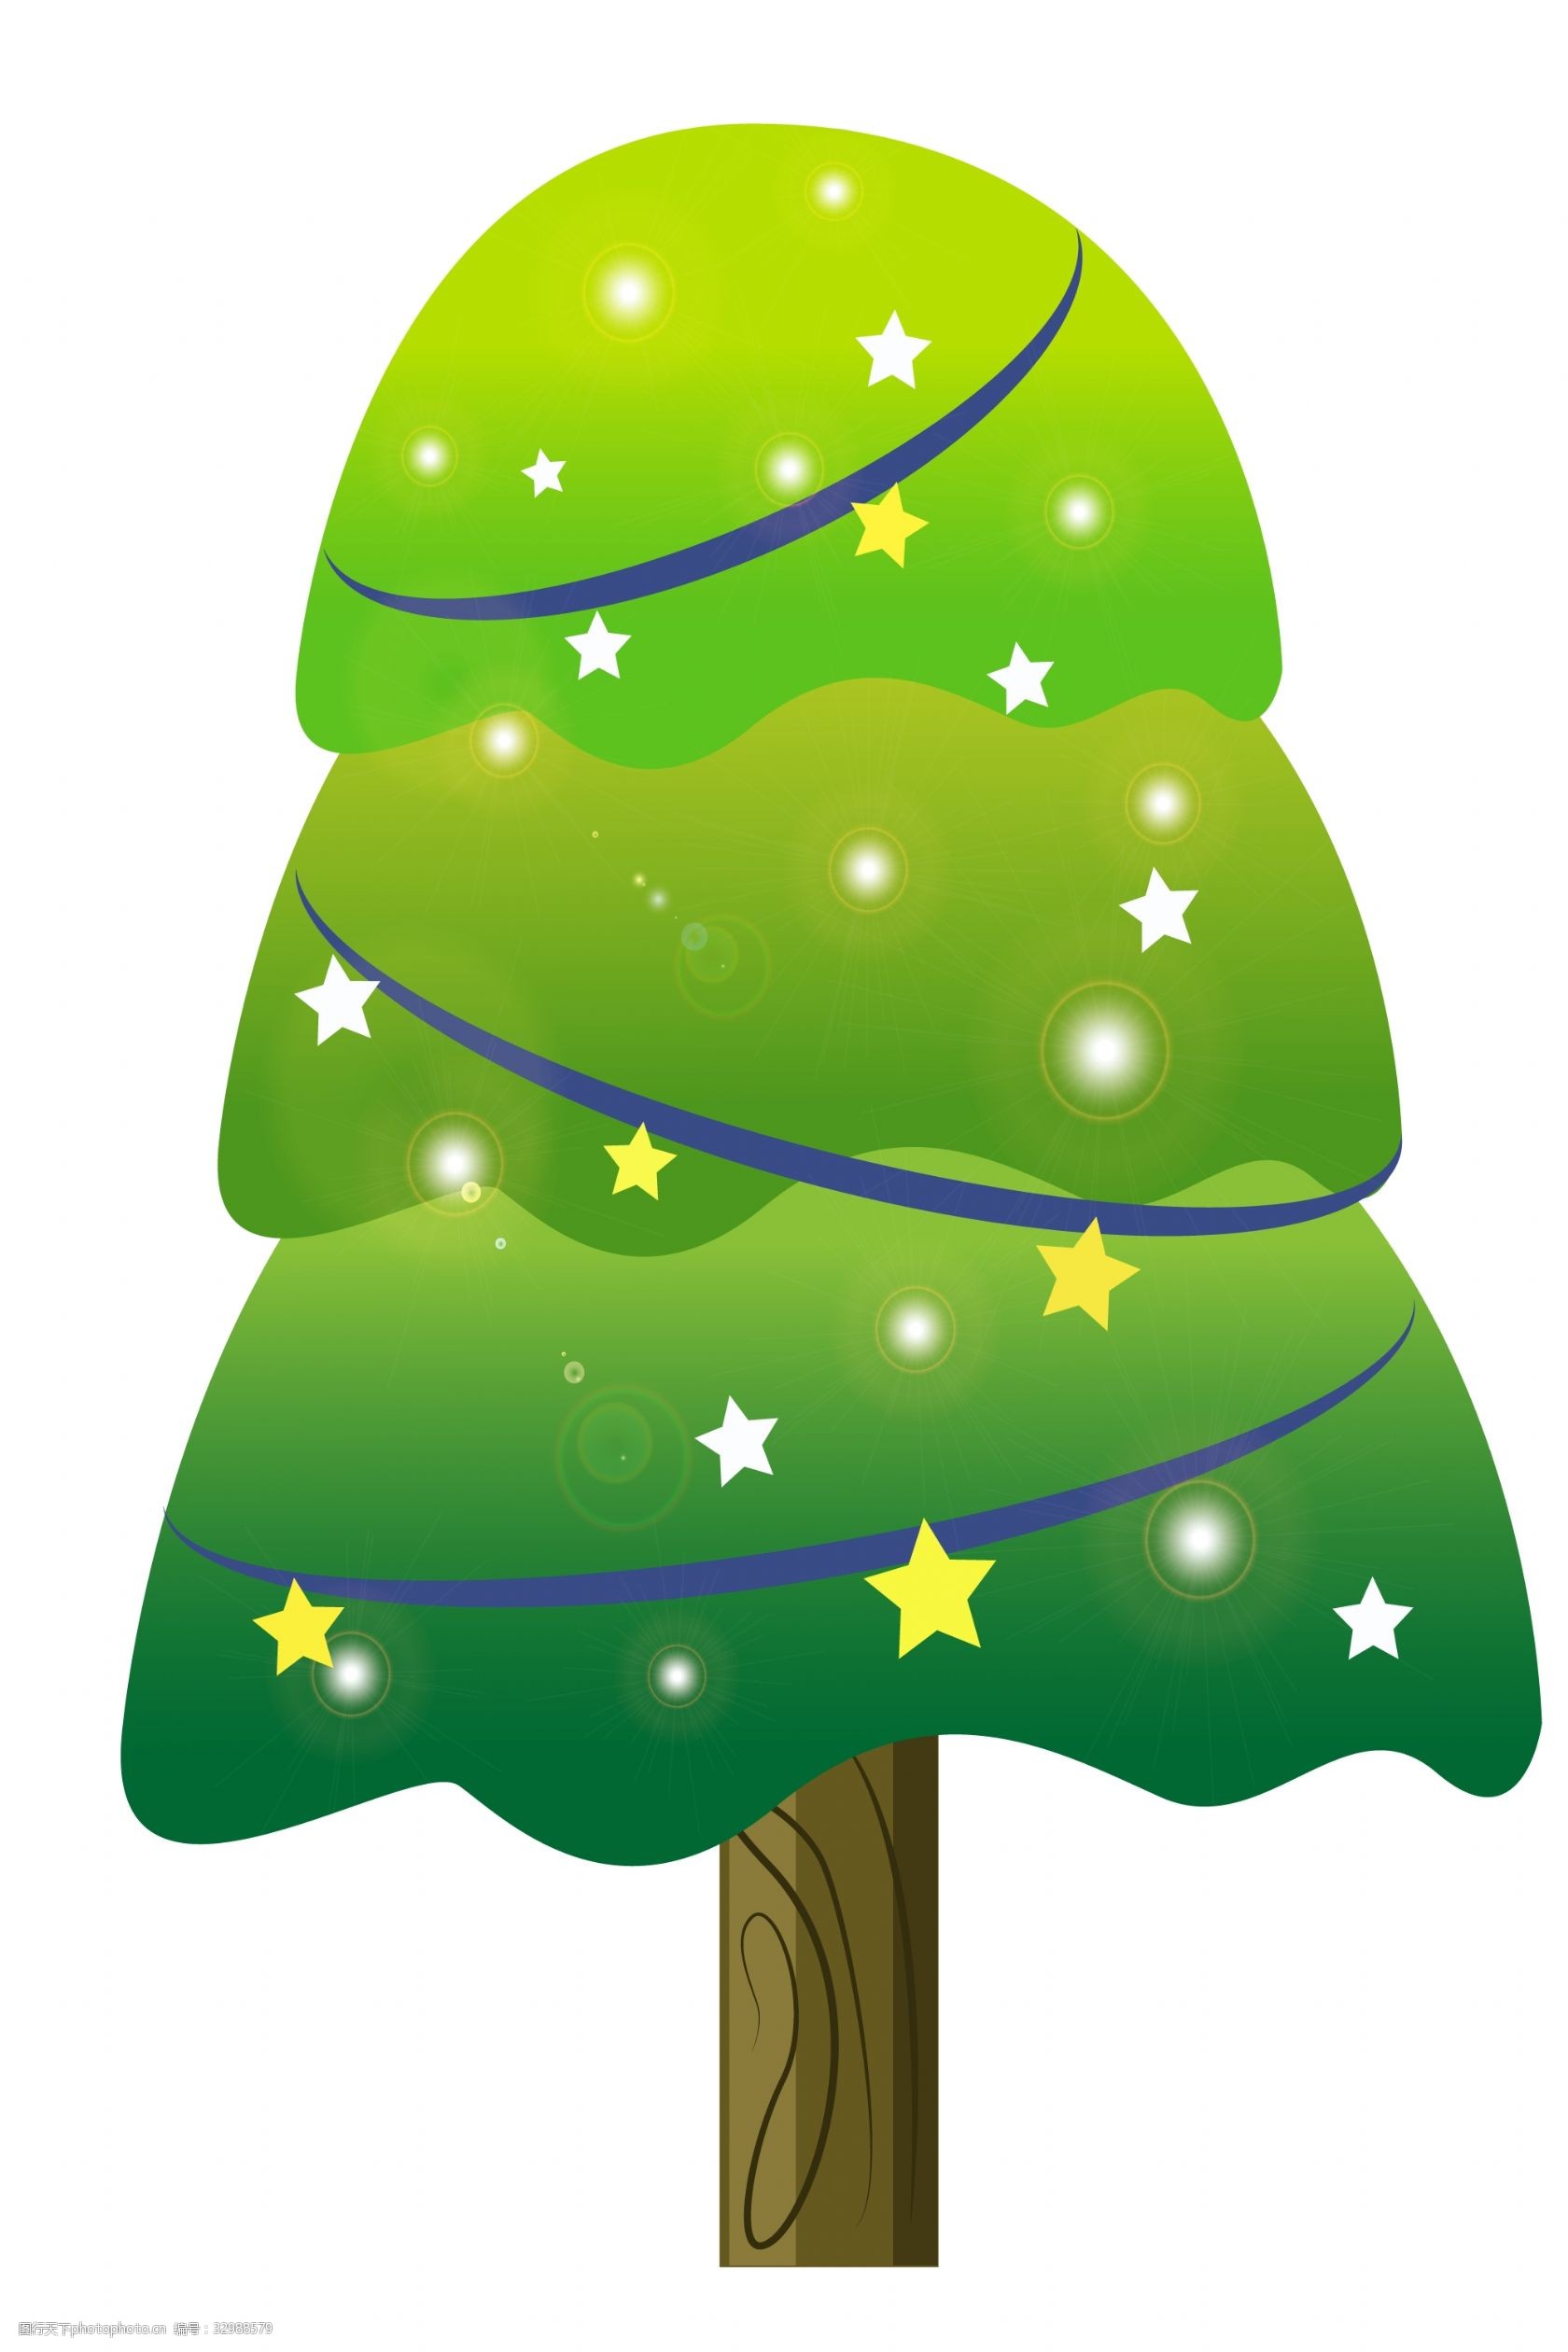 关键词:创意绿色大树插画 绿色斑点树叶 卡通植物插画 大树 树木 植物